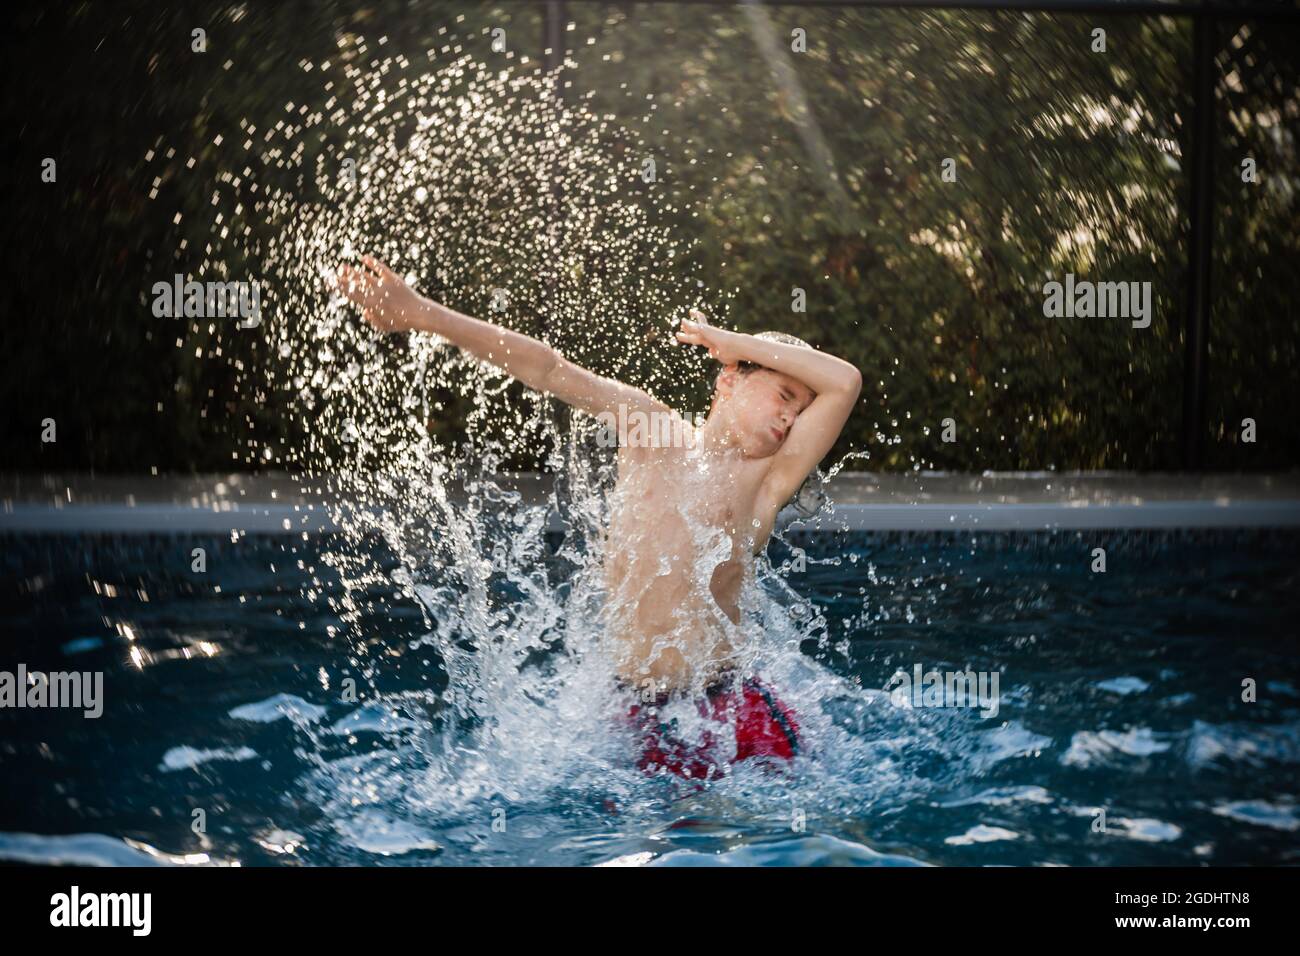 Glücklicher 8 Jahre alter Junge, der im Sommer Spaß in einem Schwimmbad hat Stockfoto